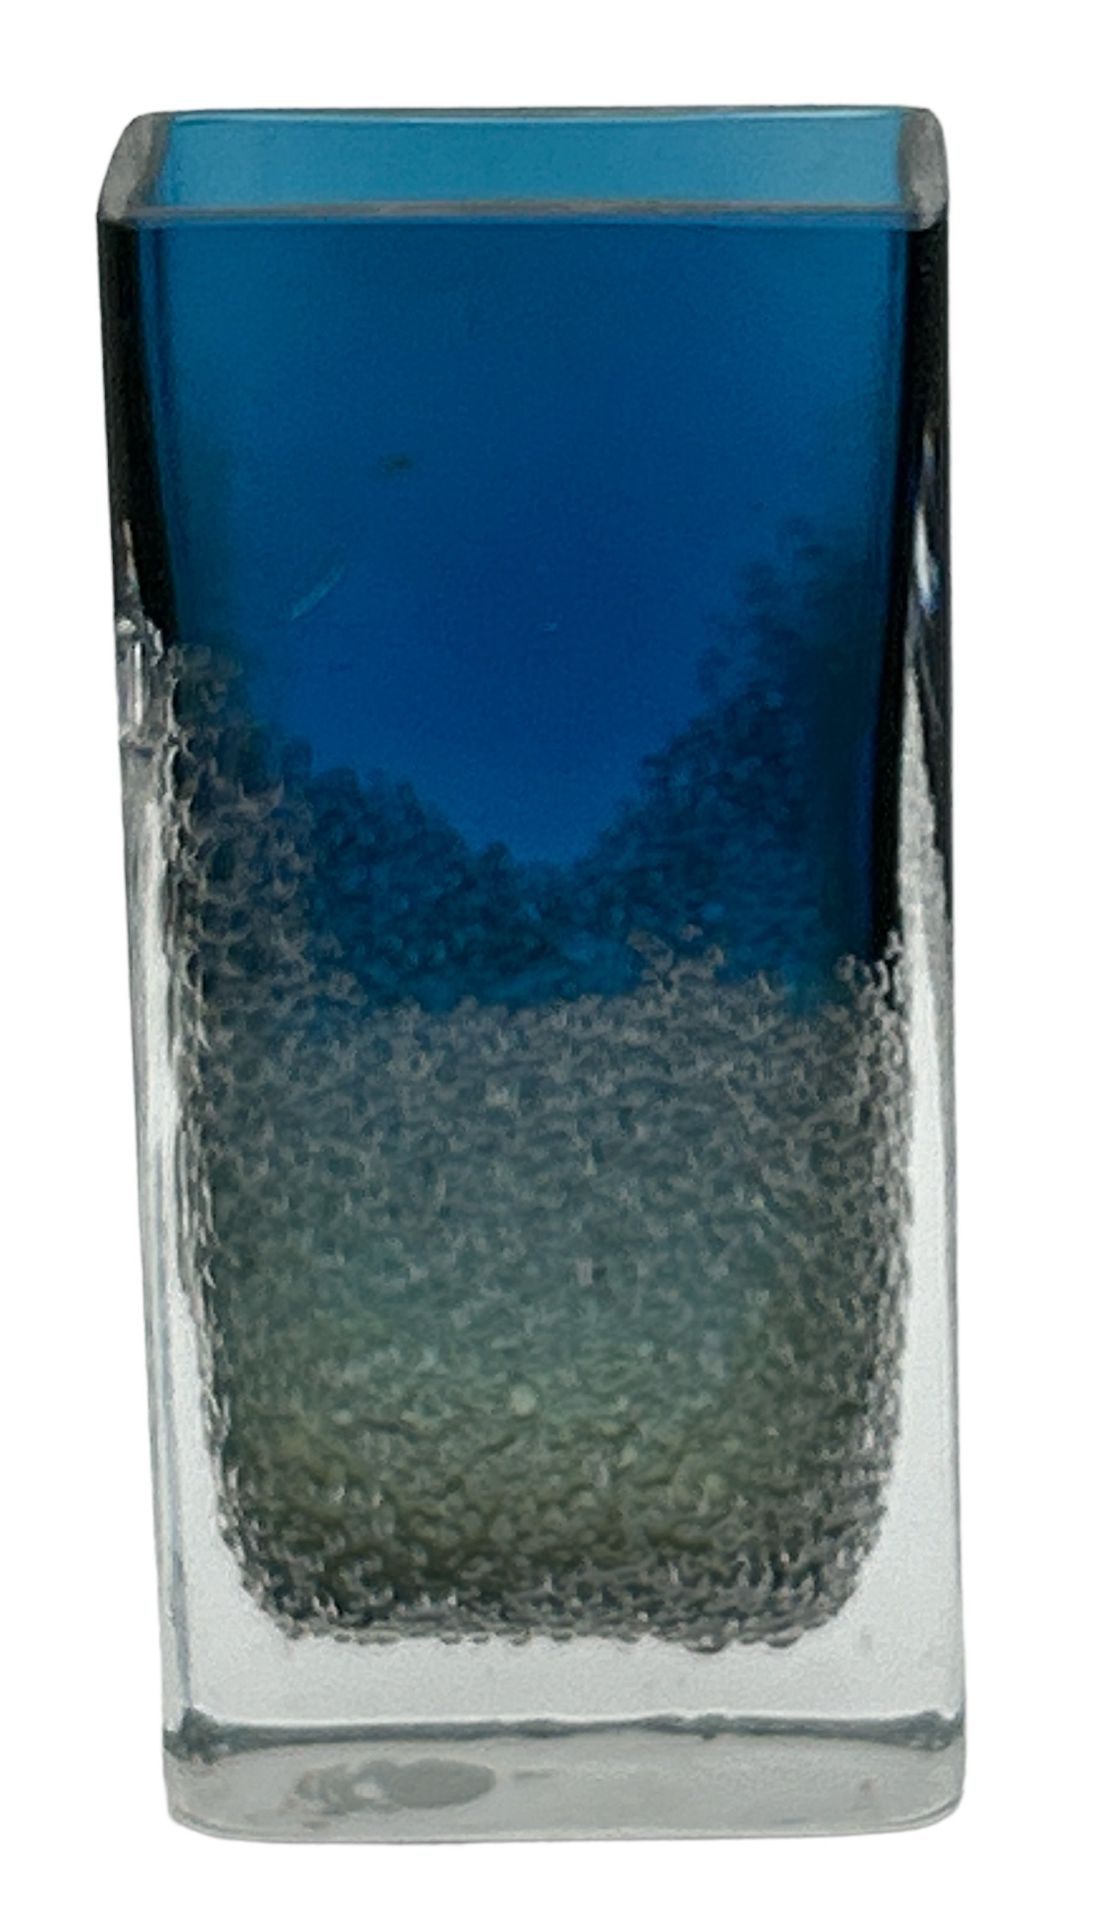 eckige Vase, blau mit Luftbläschen, wohl Zwiesel, H-15,5 cm, 7,5x3,5 cm - Image 2 of 3